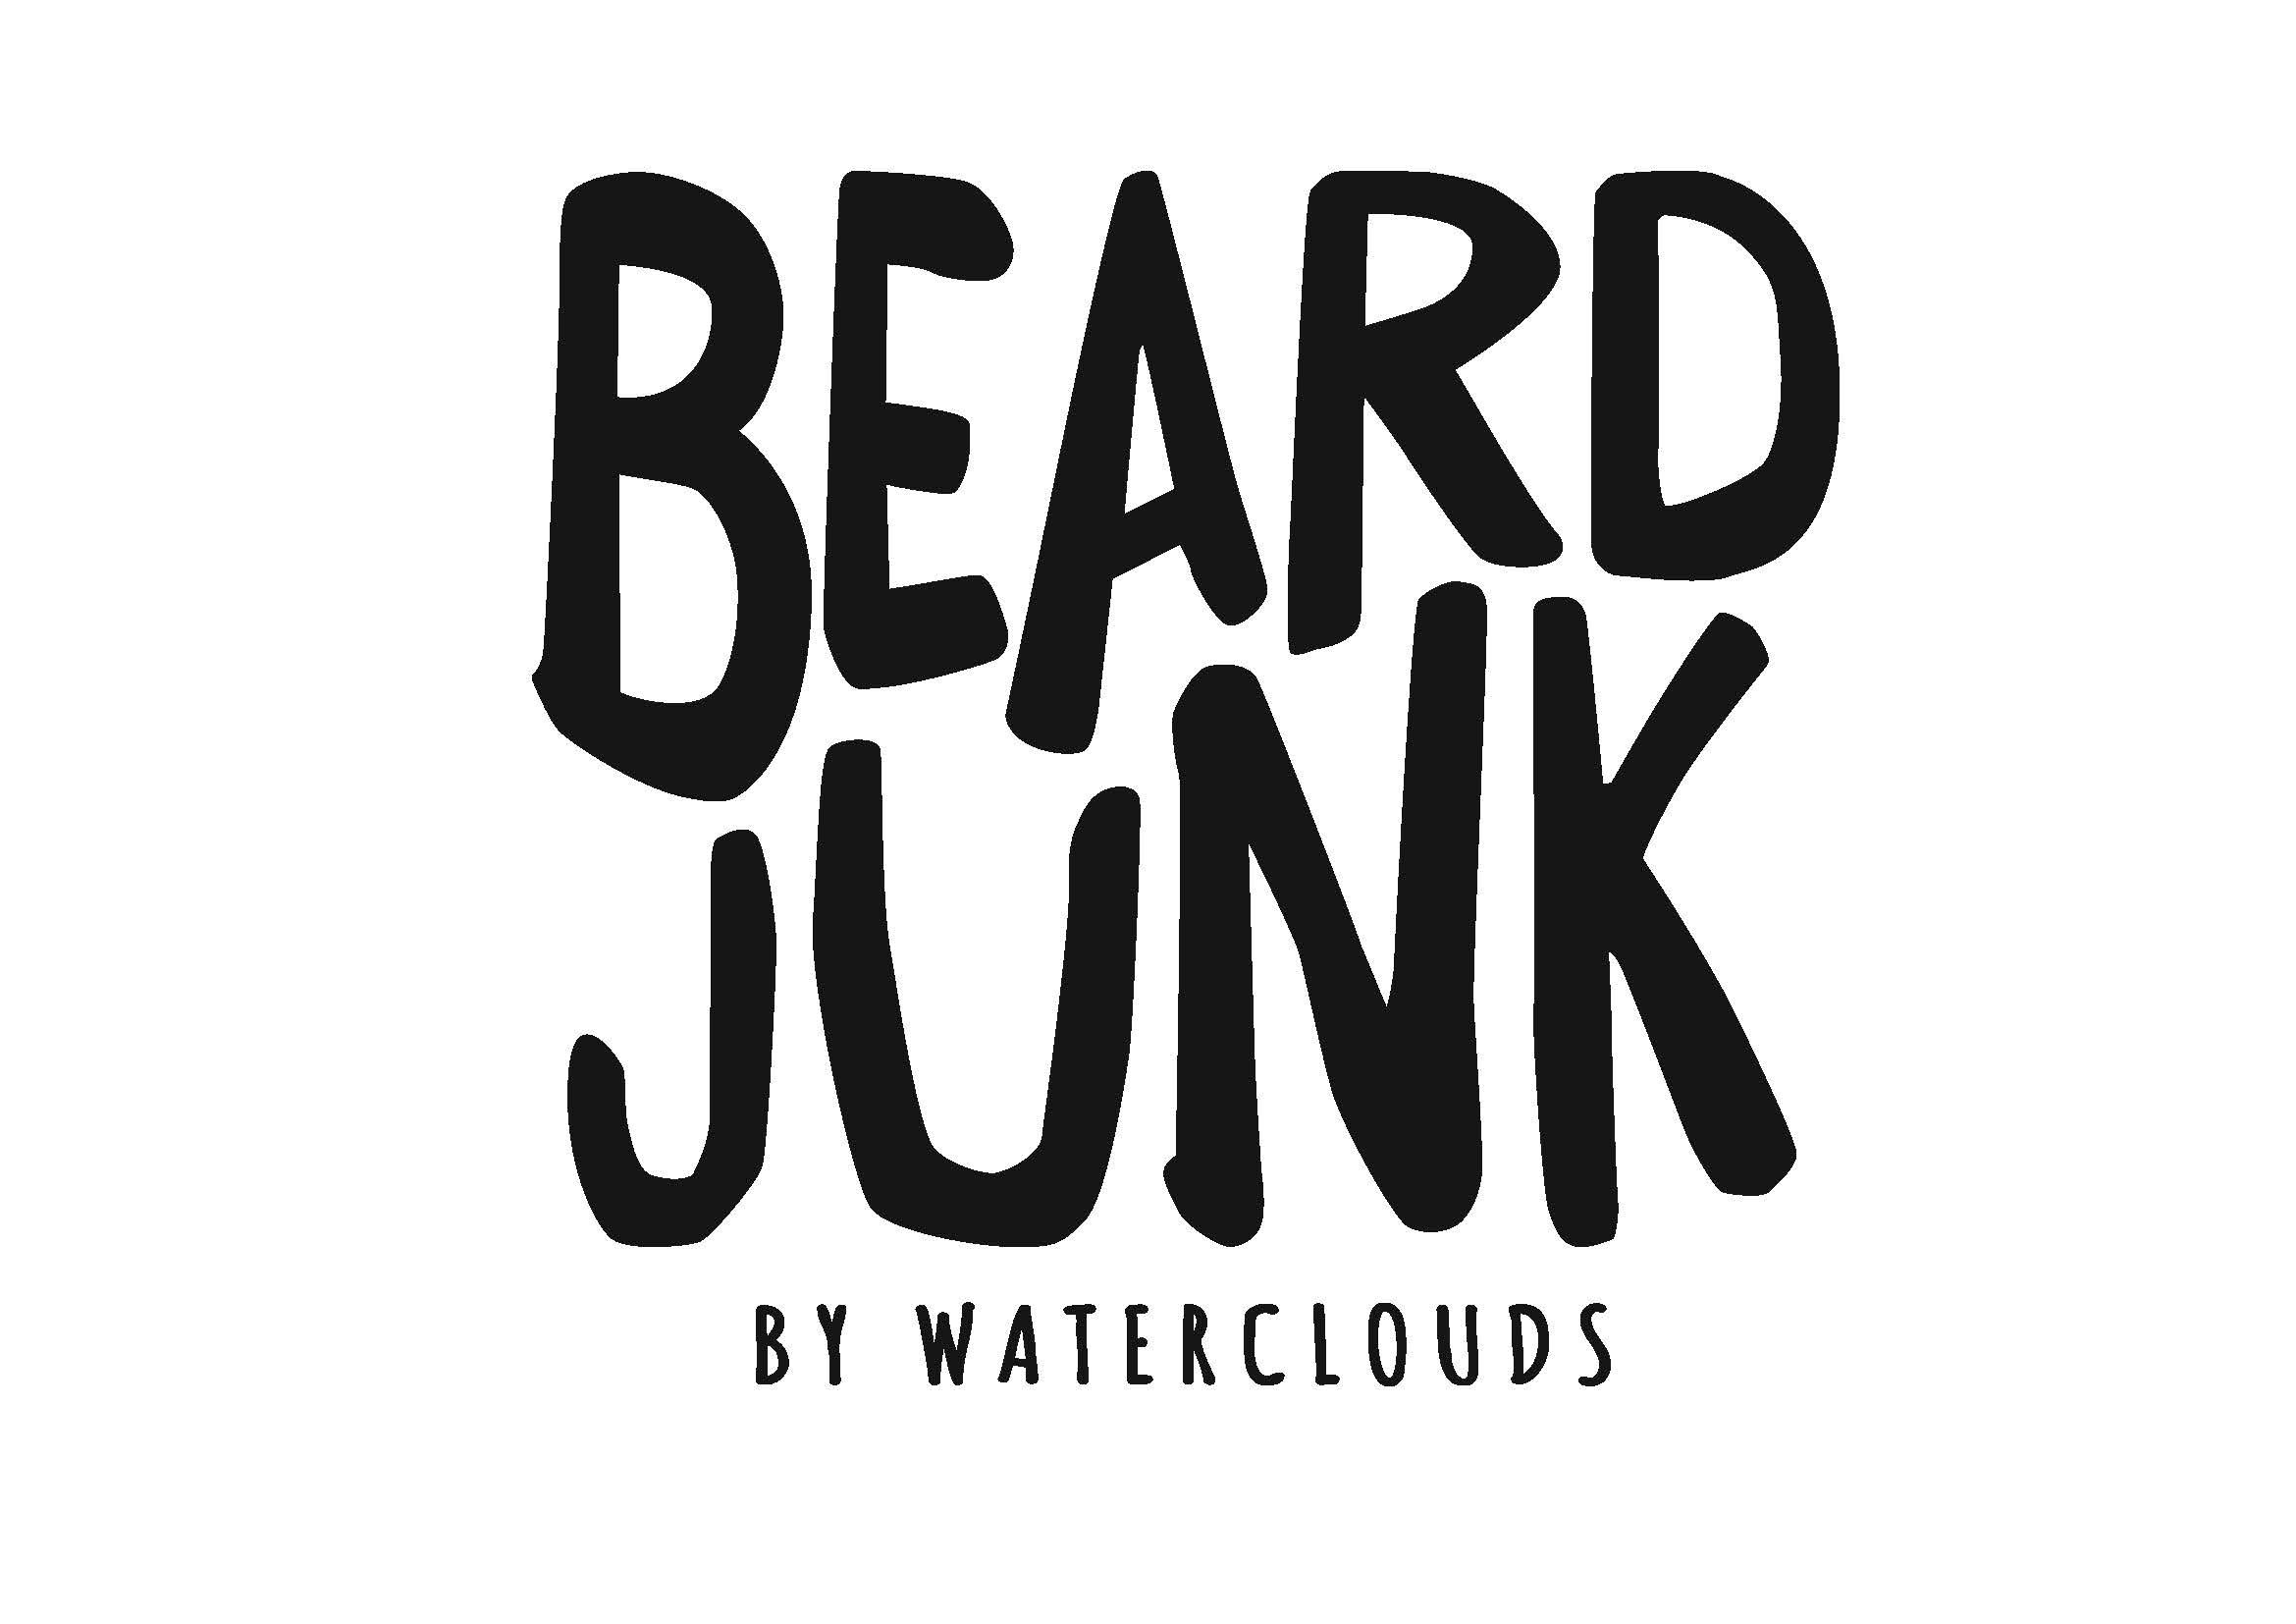 Beard Junk by Waterclouds